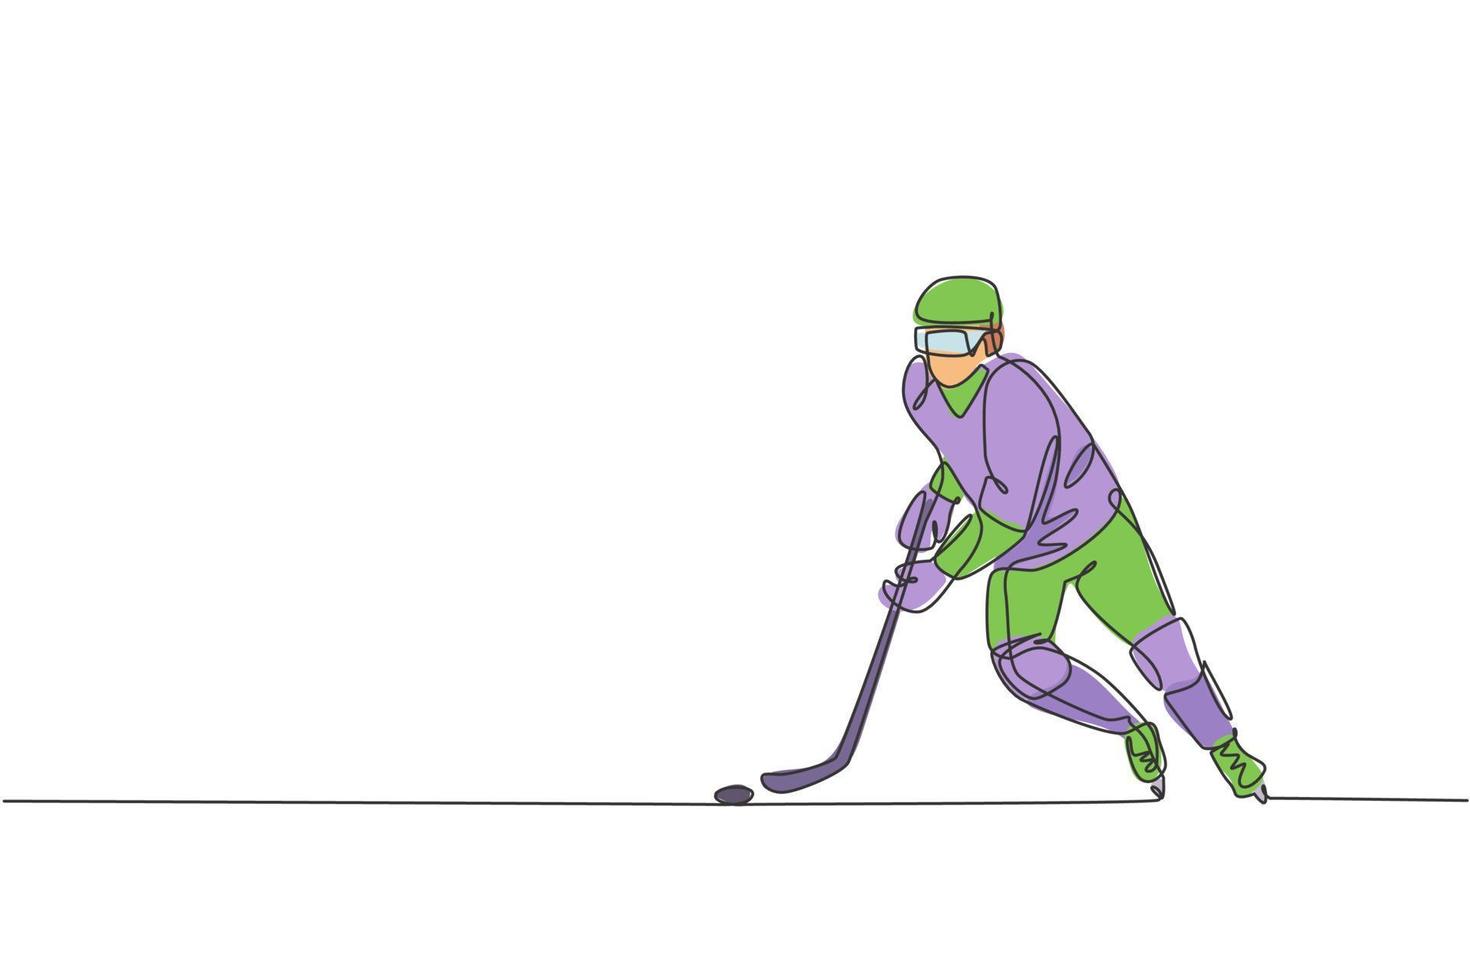 un dibujo de línea continua de un joven jugador profesional de hockey sobre hielo haciendo ejercicio y practicando en un estadio de pista de hielo. concepto de deporte extremo saludable. Ilustración de vector de diseño de dibujo de línea única dinámica